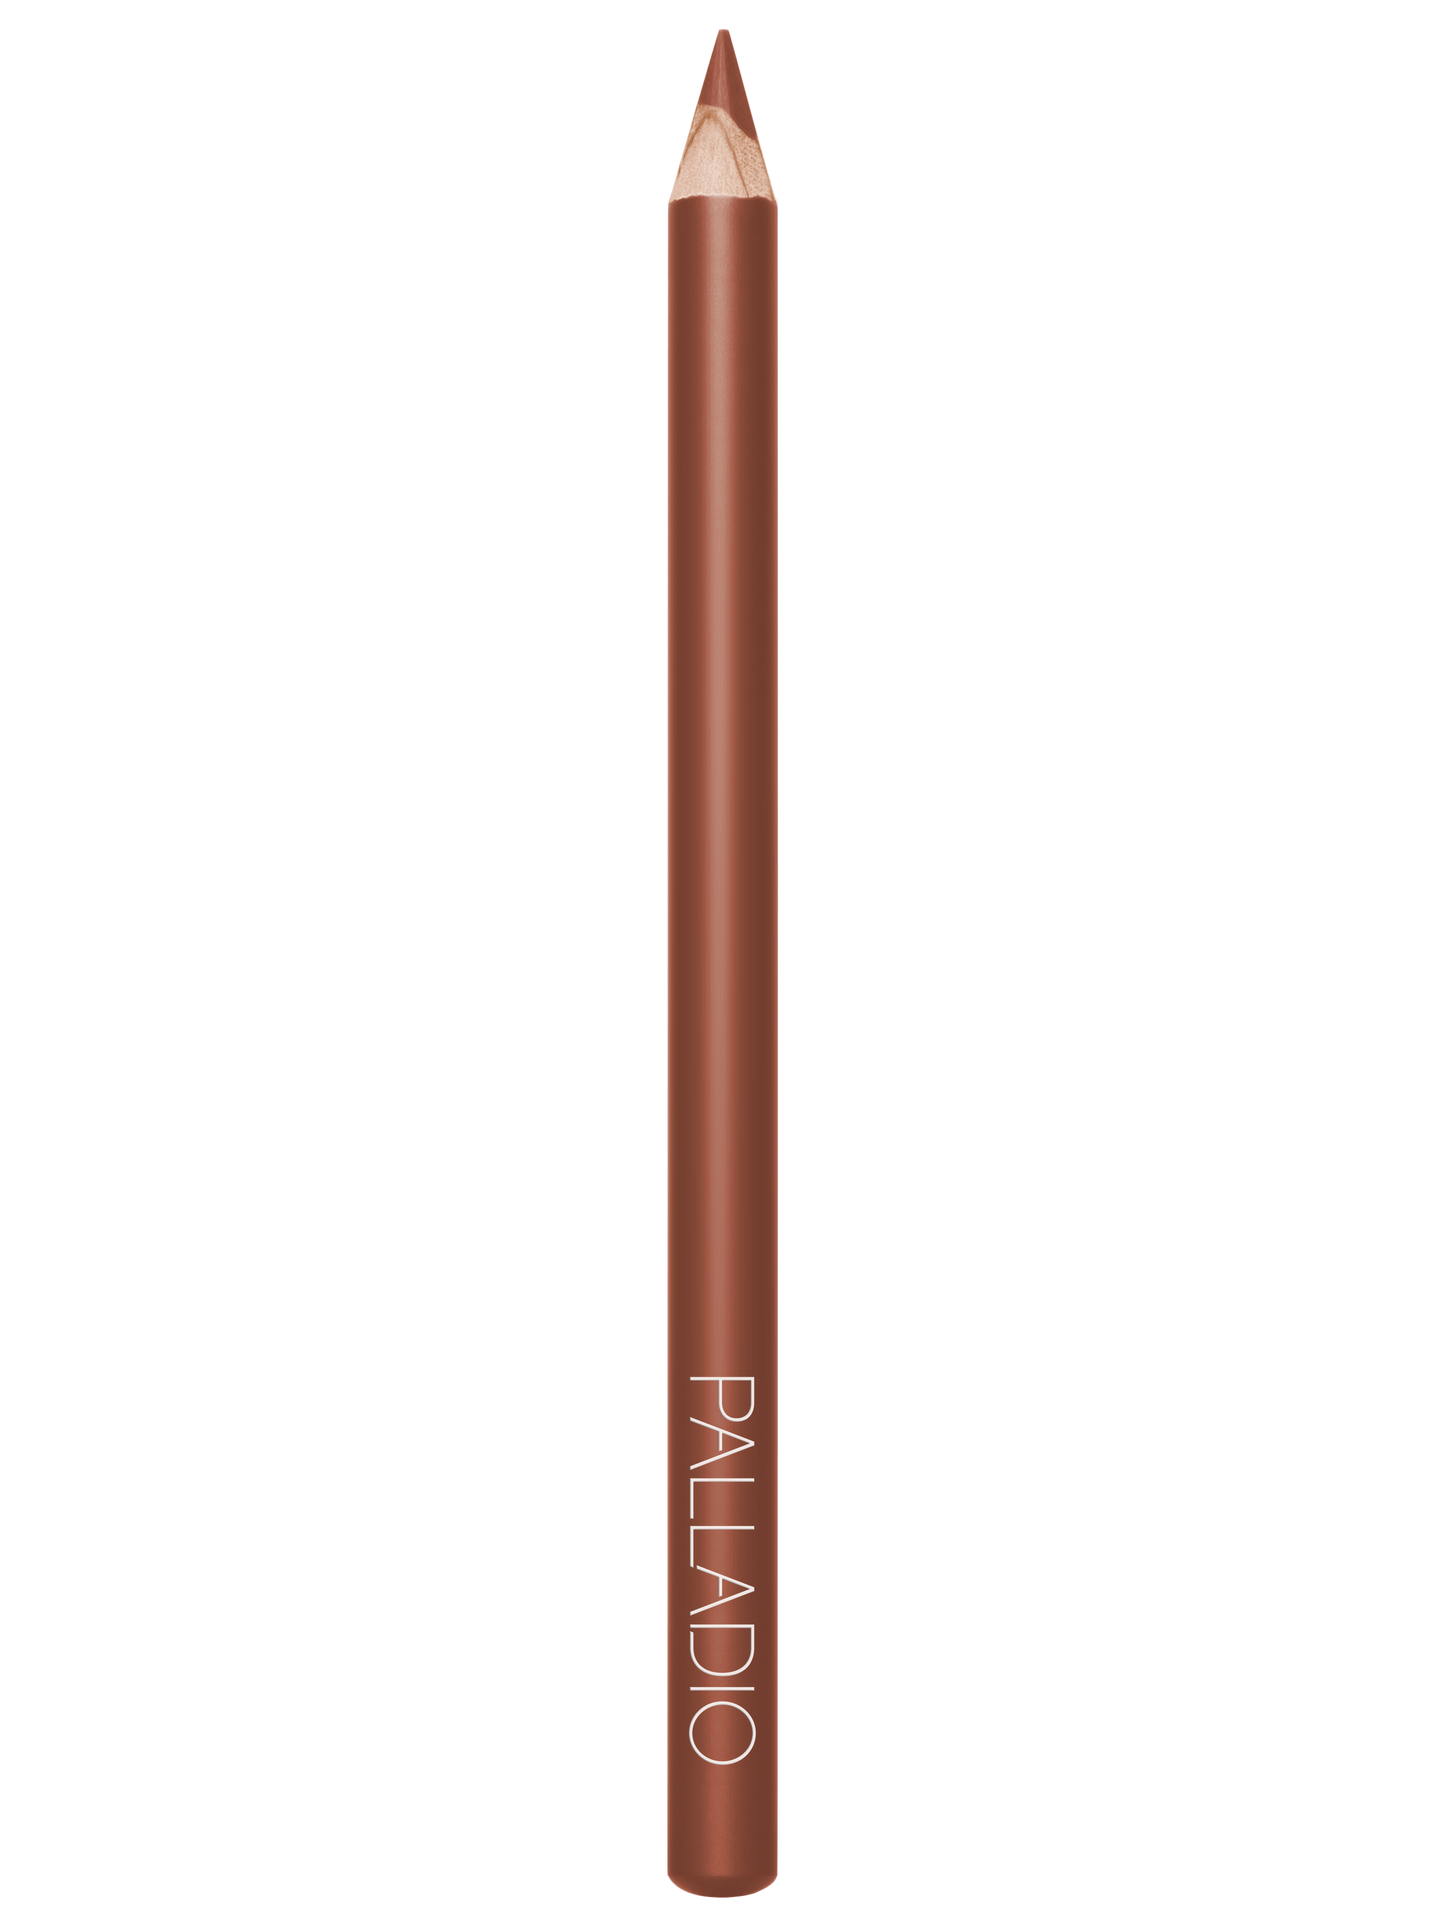 Palladio Lipstick Liner PencilLip LinerPALLADIOColor: Spice Ll288